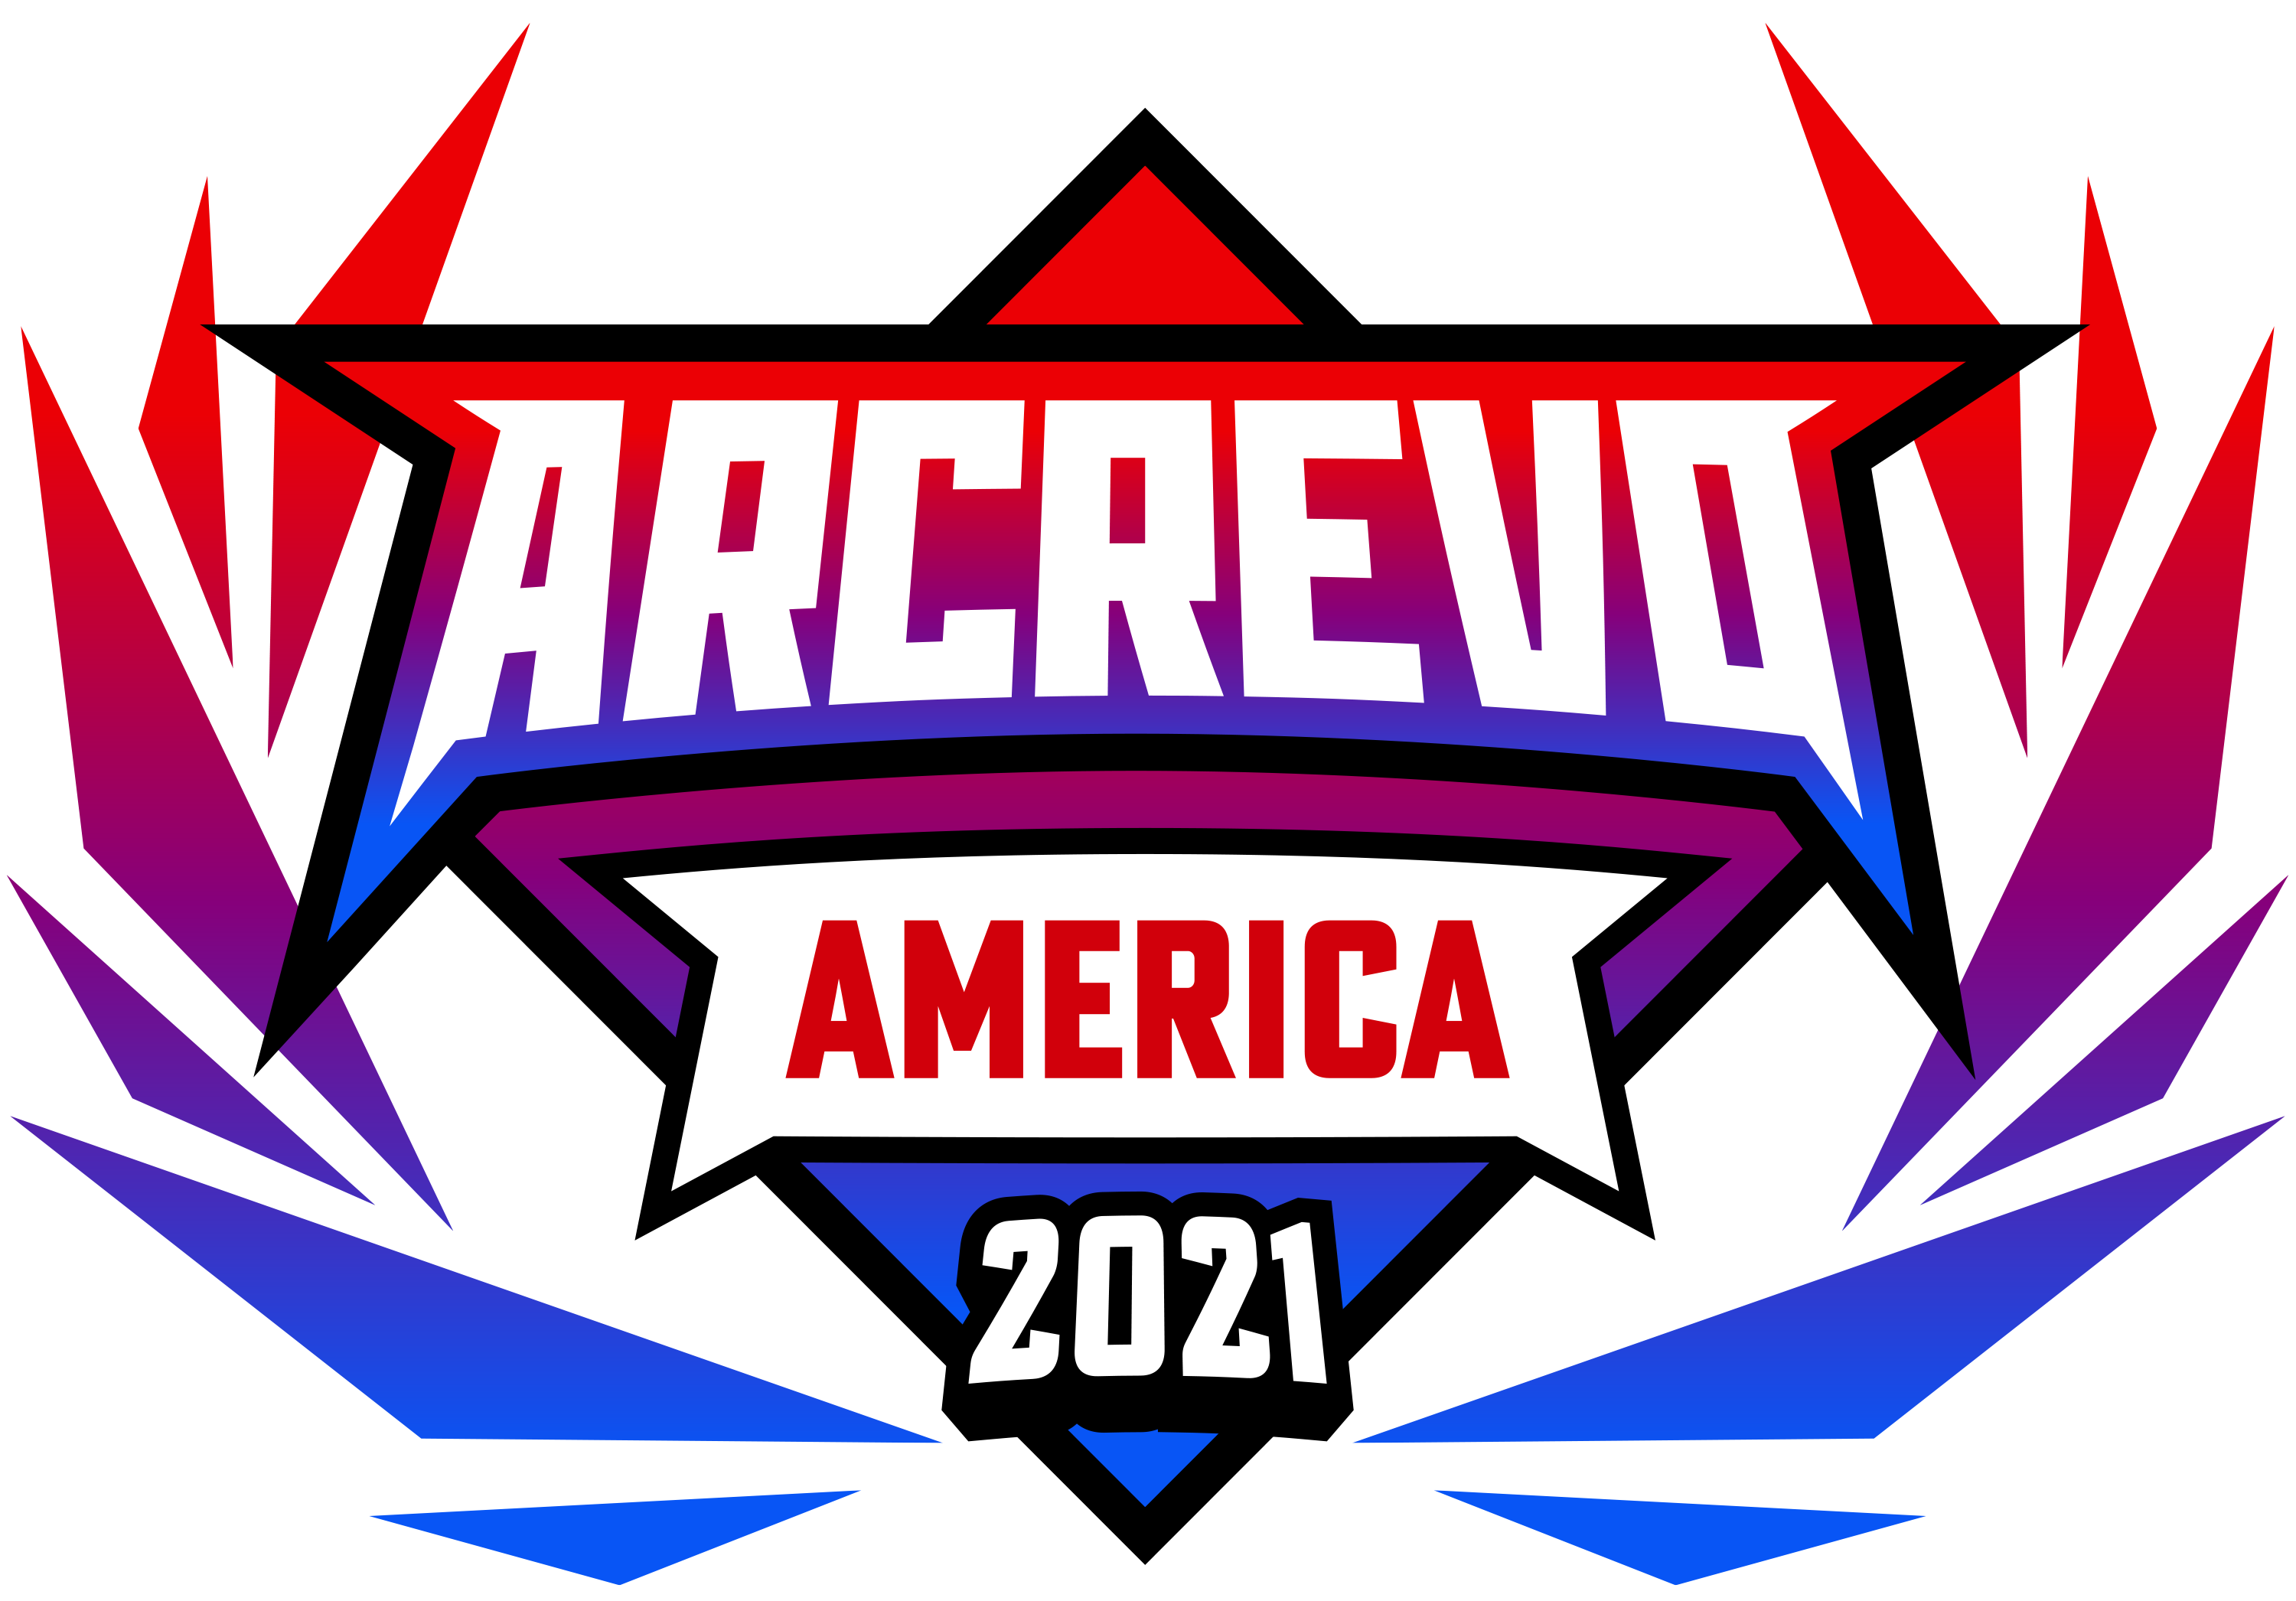 ARCREVO AMERICA 2021